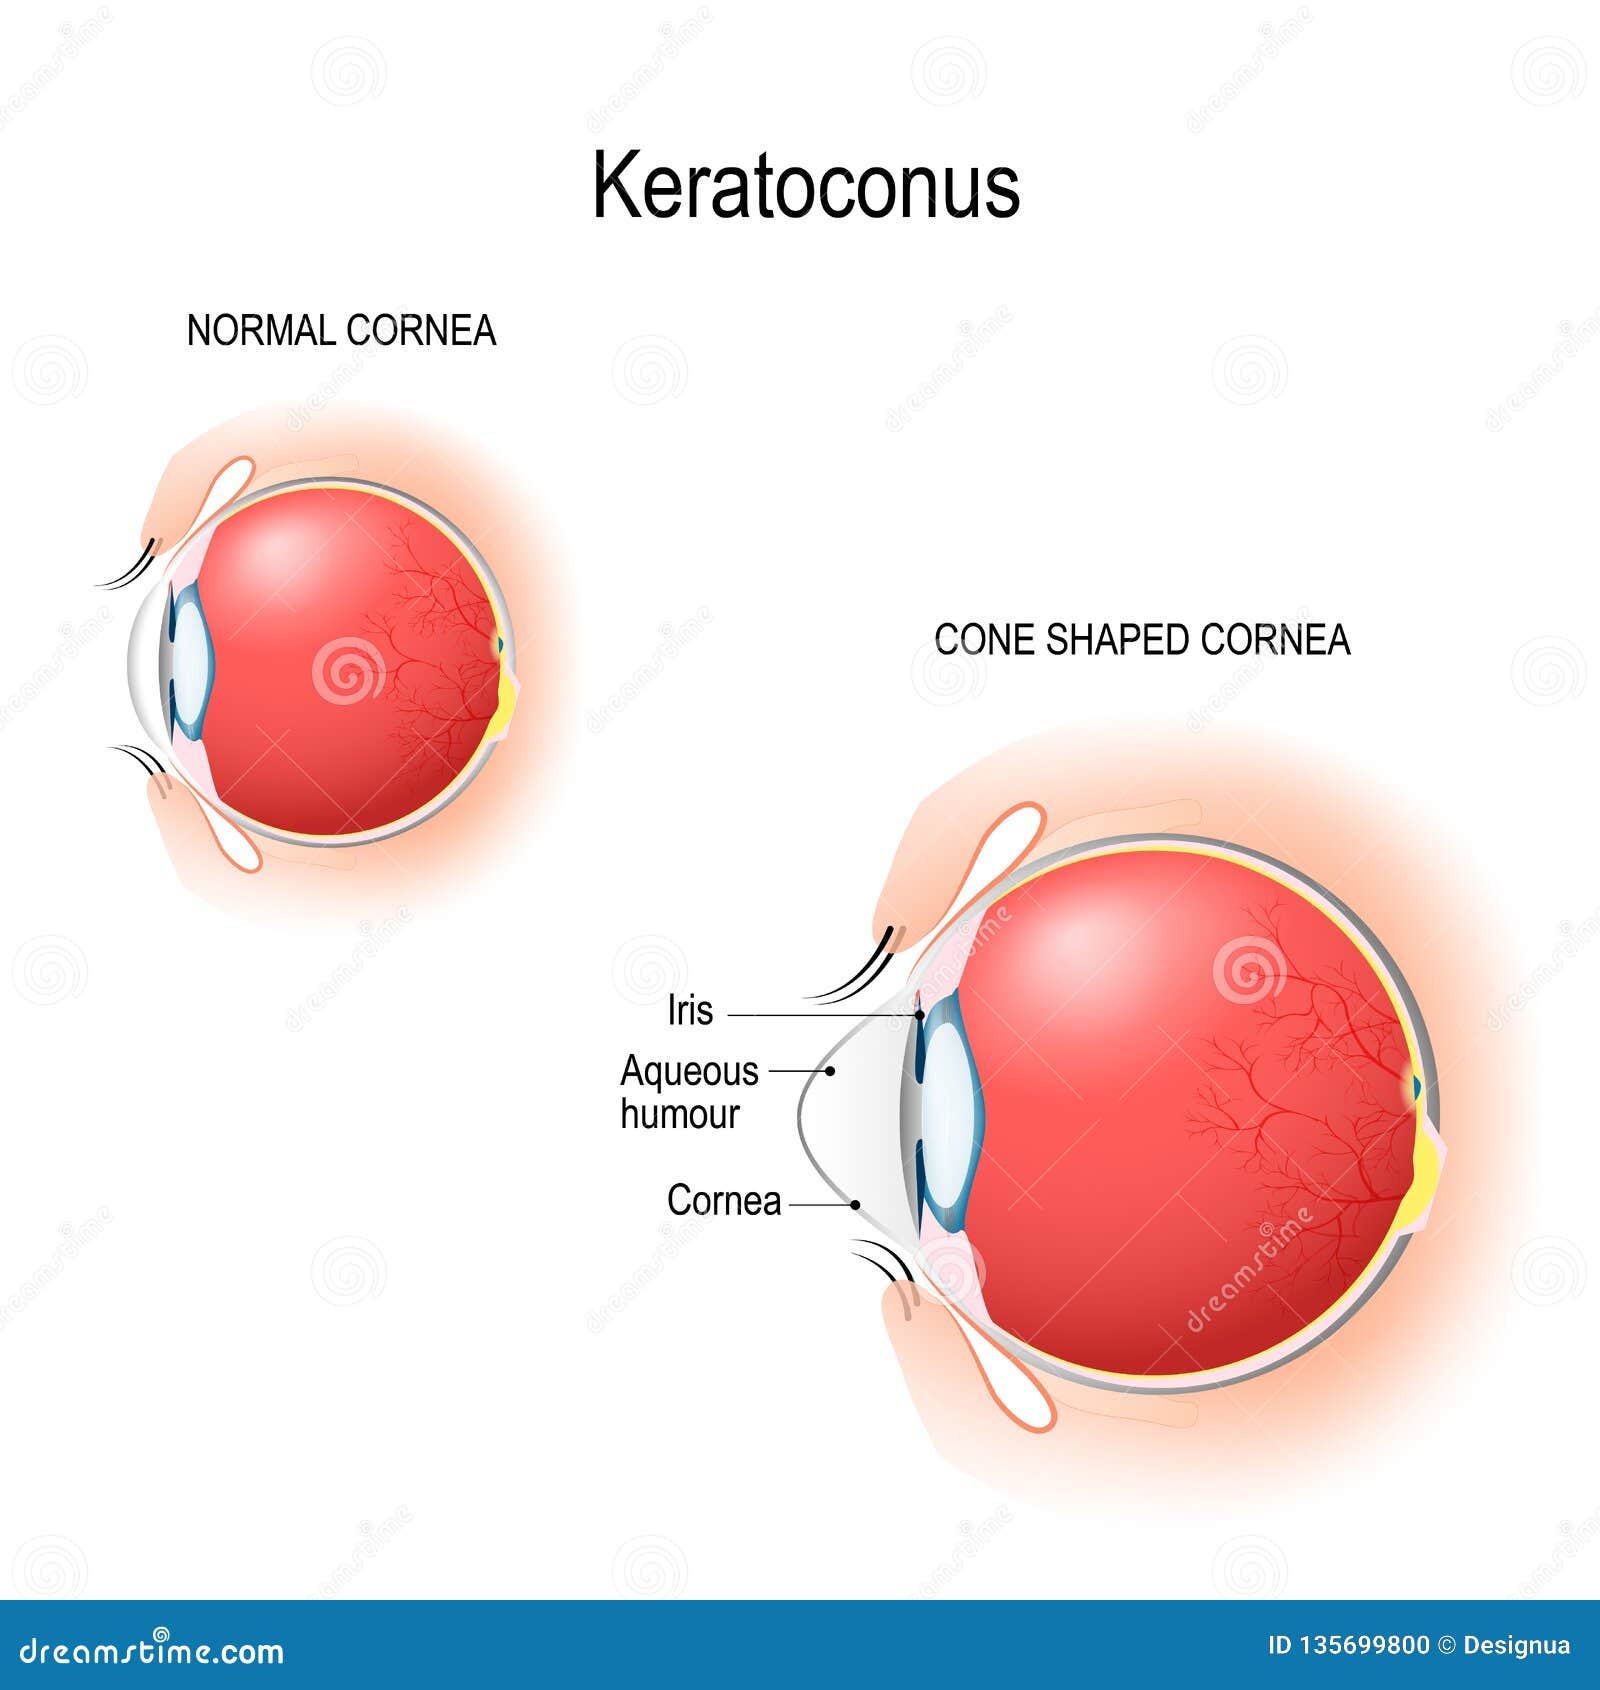 keratoconus. normal cornea and cone d cornea